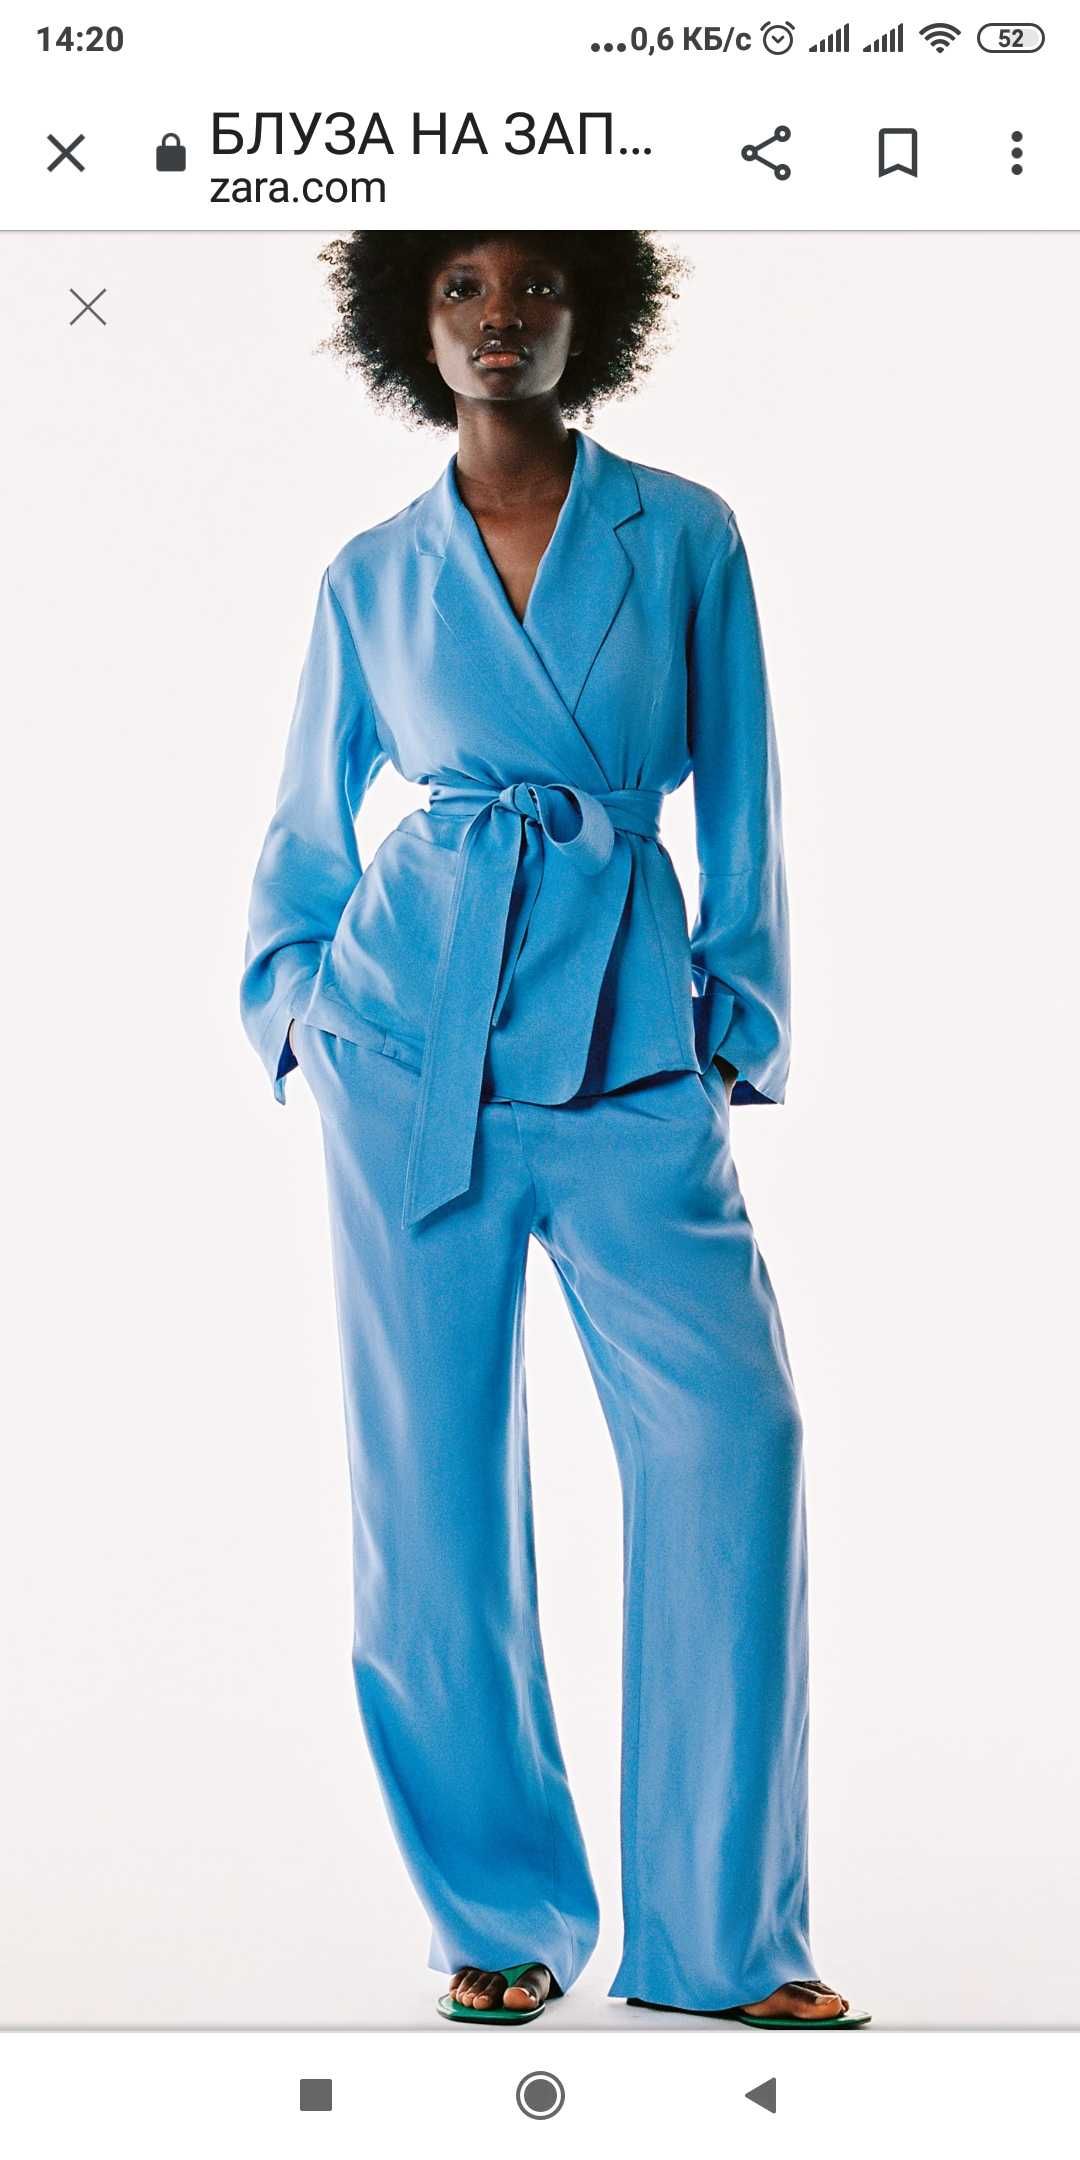 Новый пиджак, кардиган Zara пижамный стиль размер S--L